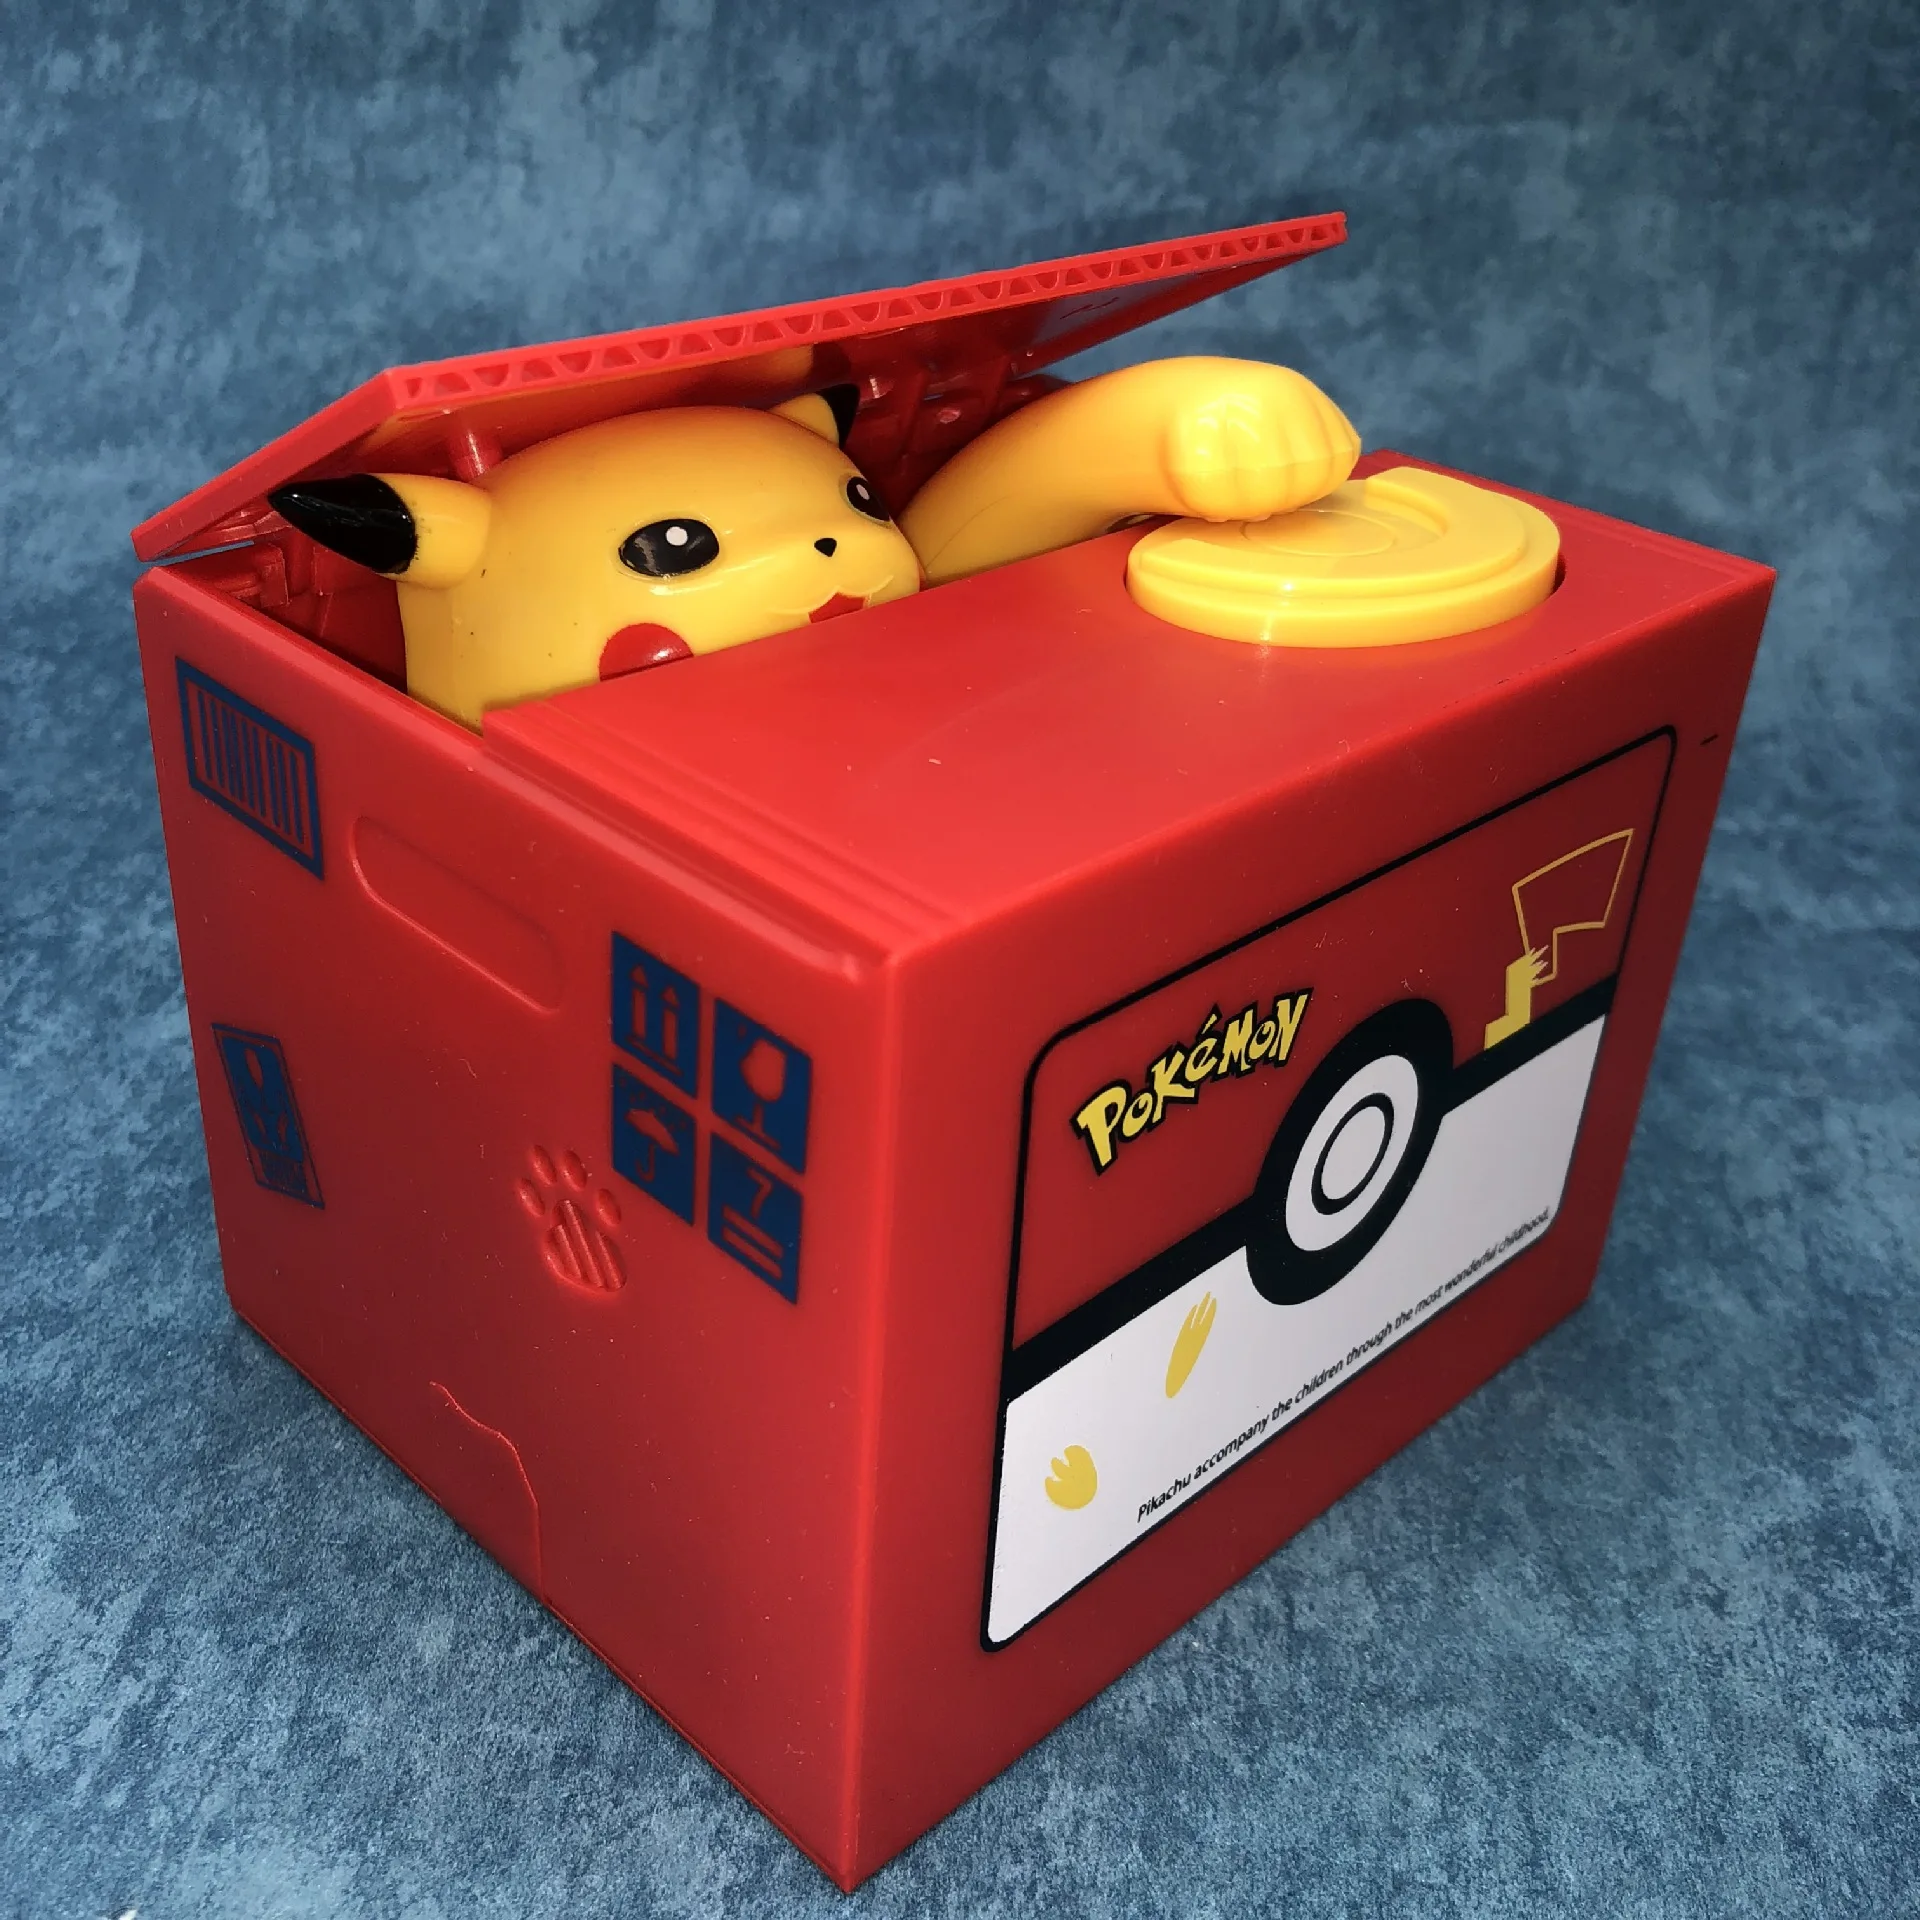 2020 Sparbüchse Pokemo Spardosen Pikachu Sparschwein Stehlen sparen Spielzeug